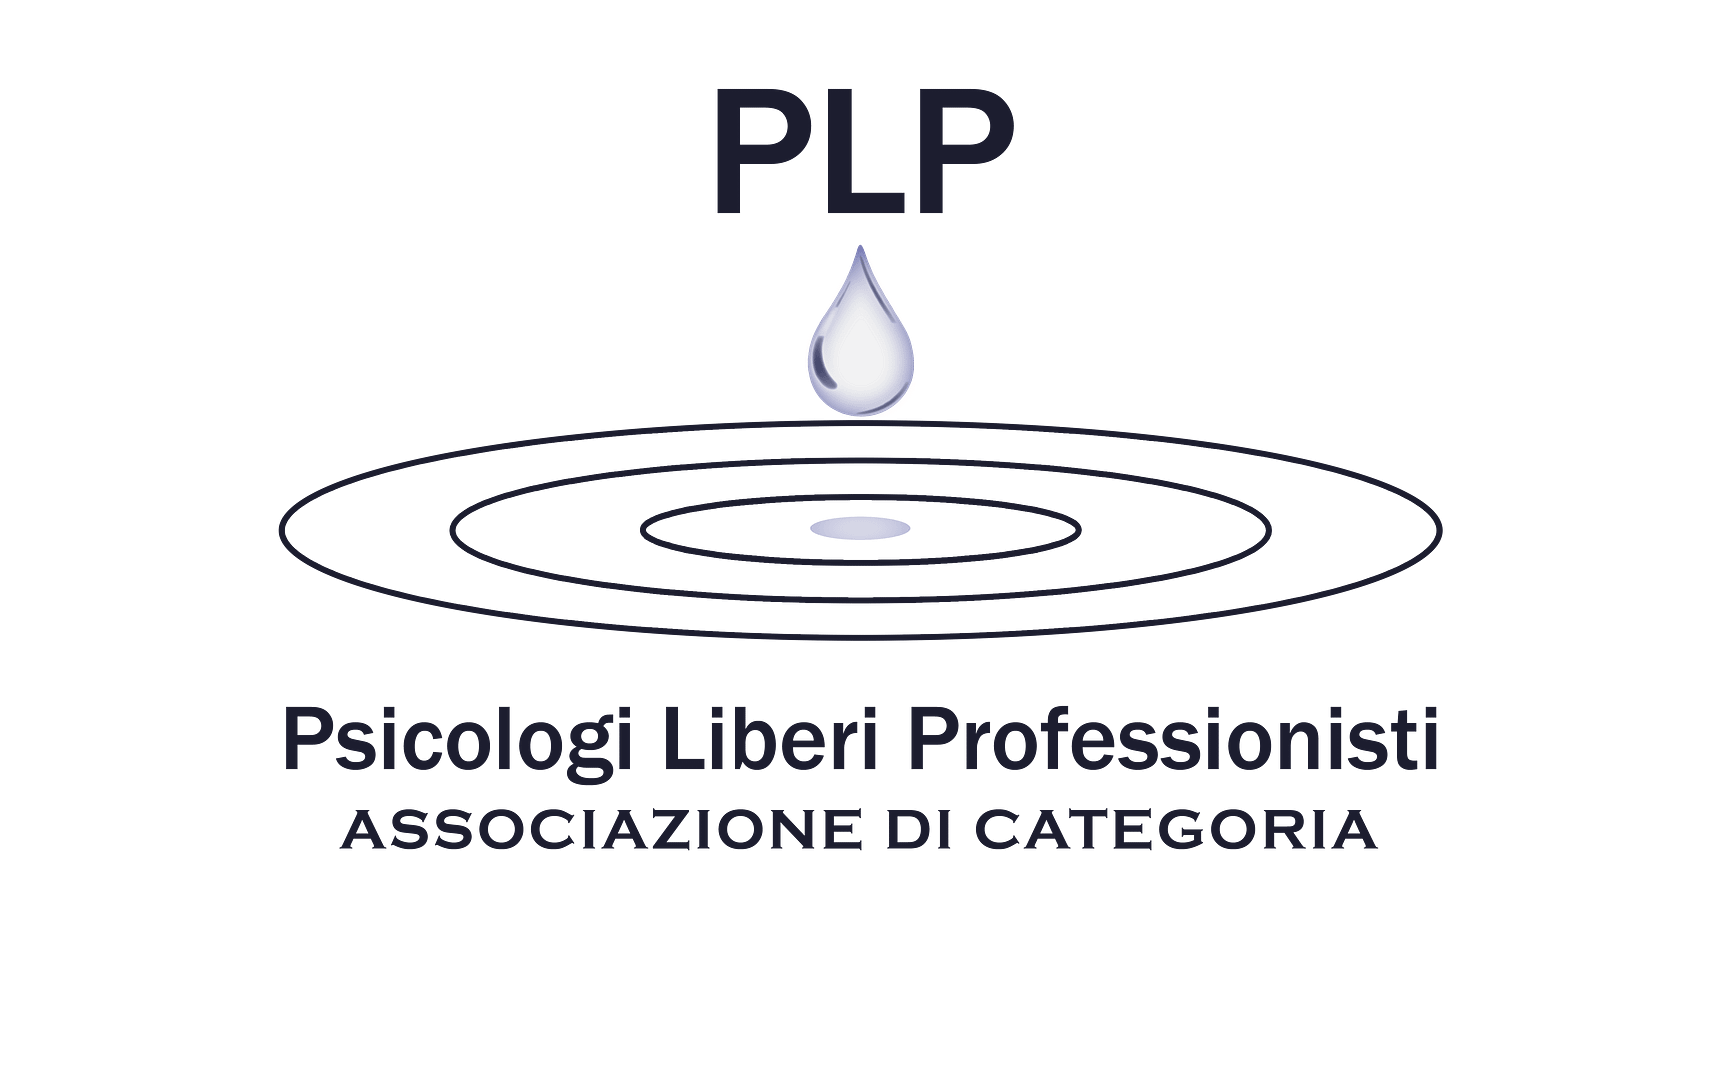 PLP Psicologi Liberi Professionisti